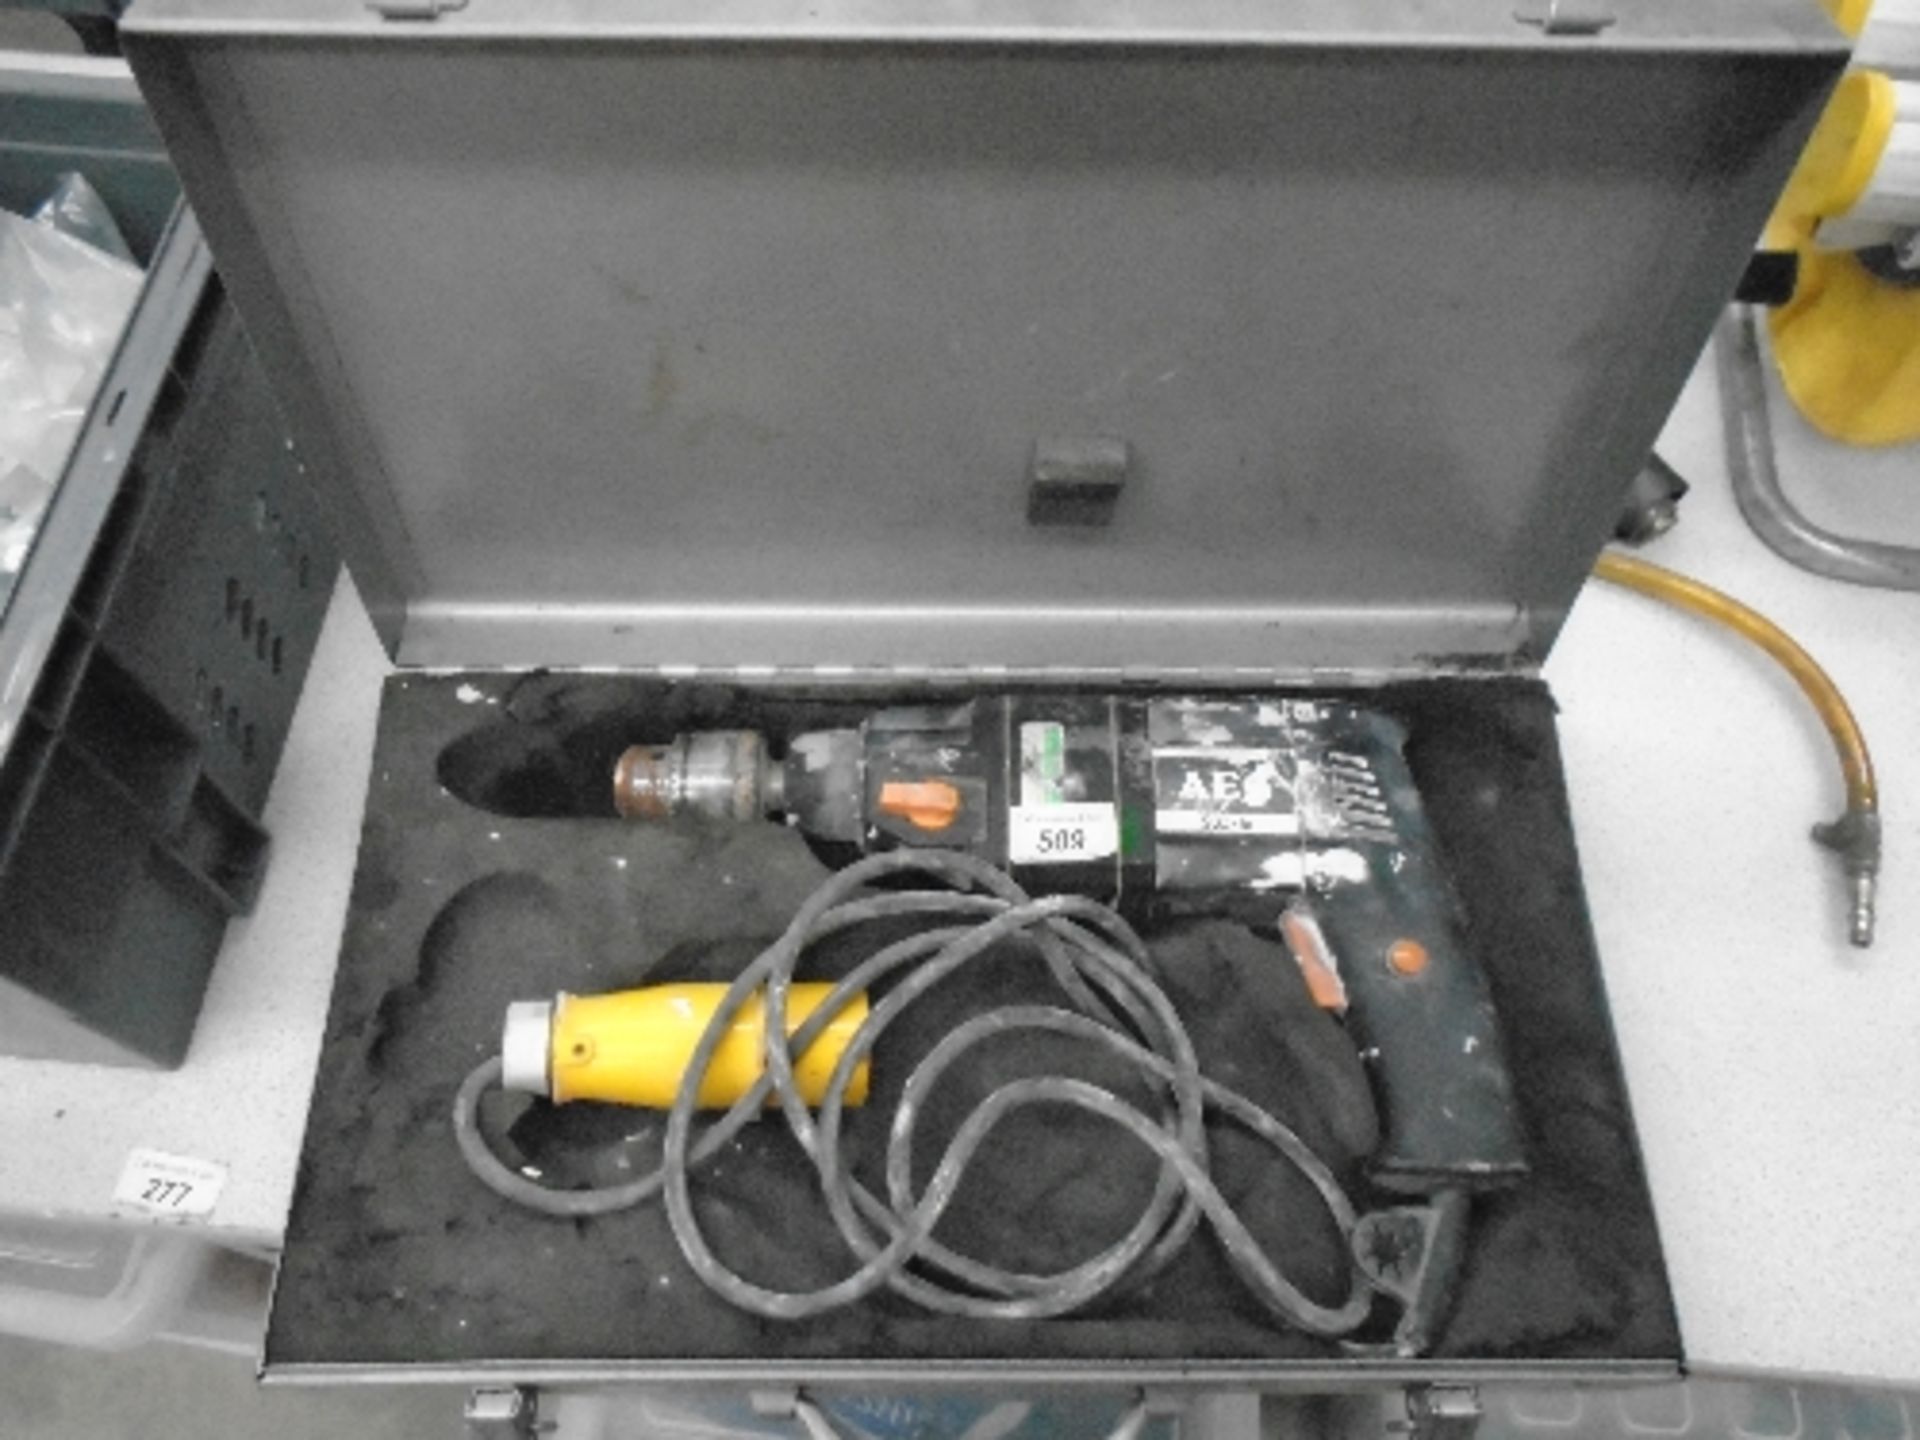 AEG SB2-16 110v hammer drill in case